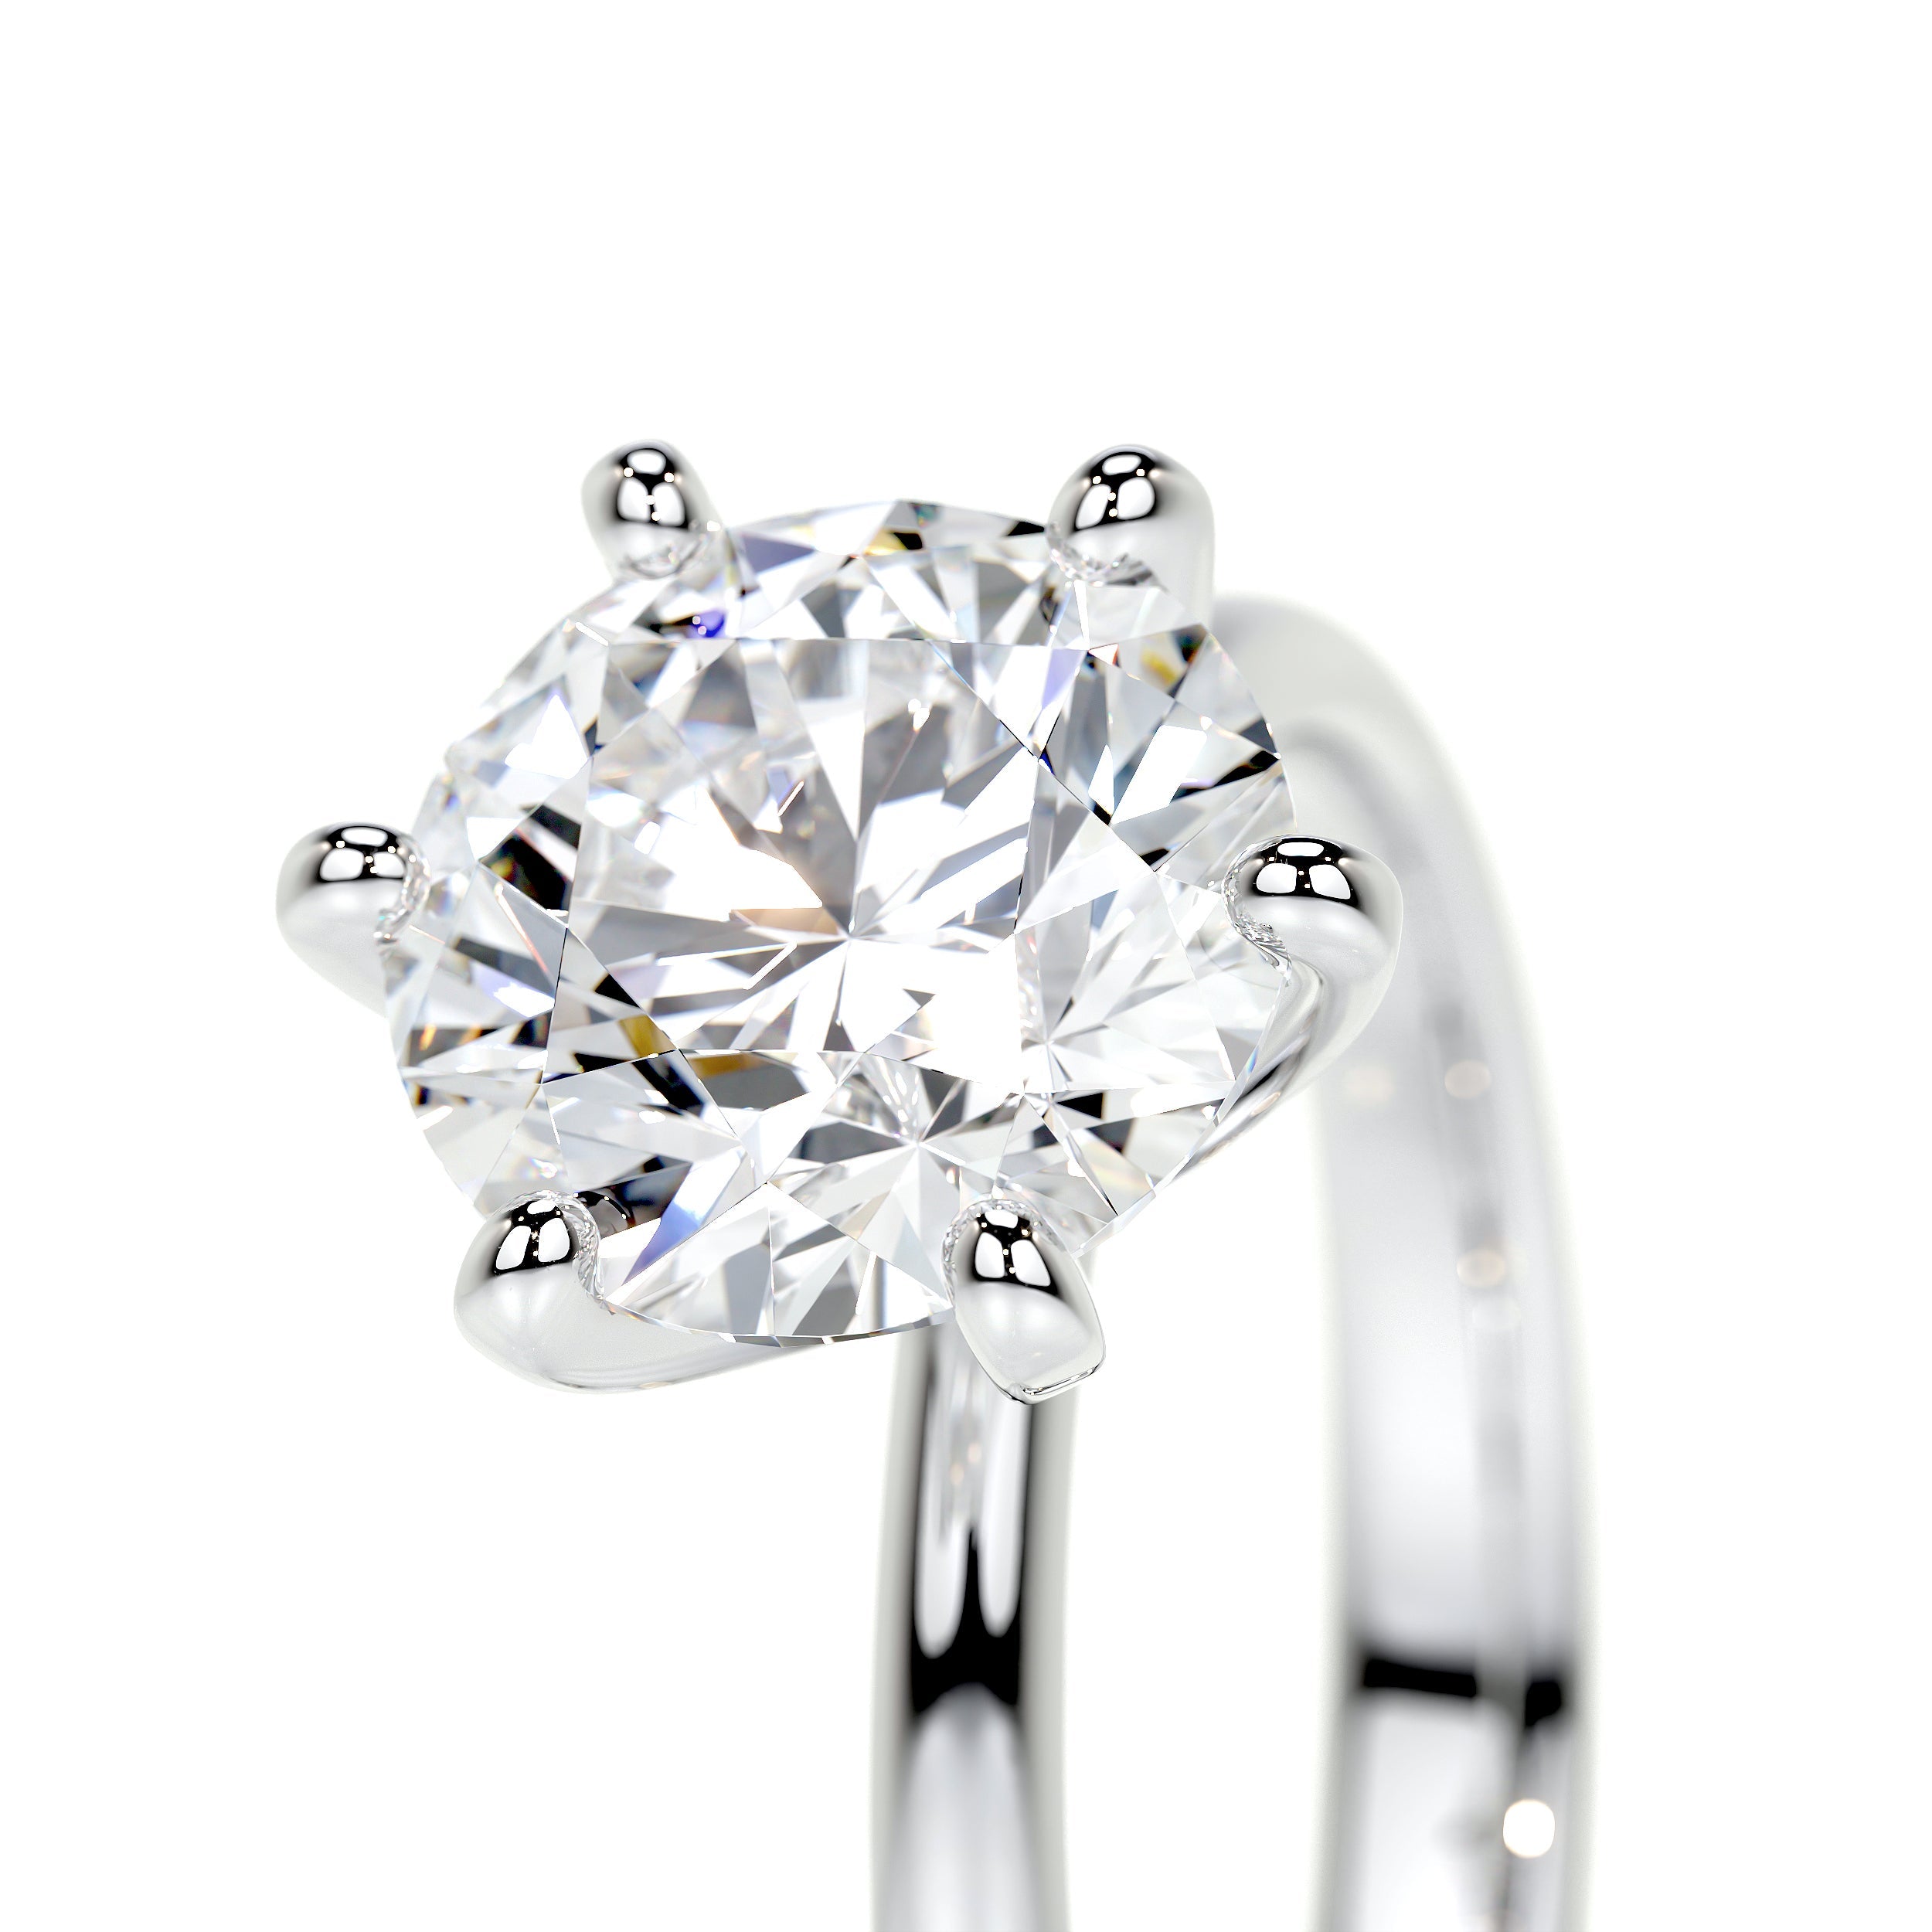 Samantha Lab Grown Diamond Ring   (2 Carat) -18K White Gold